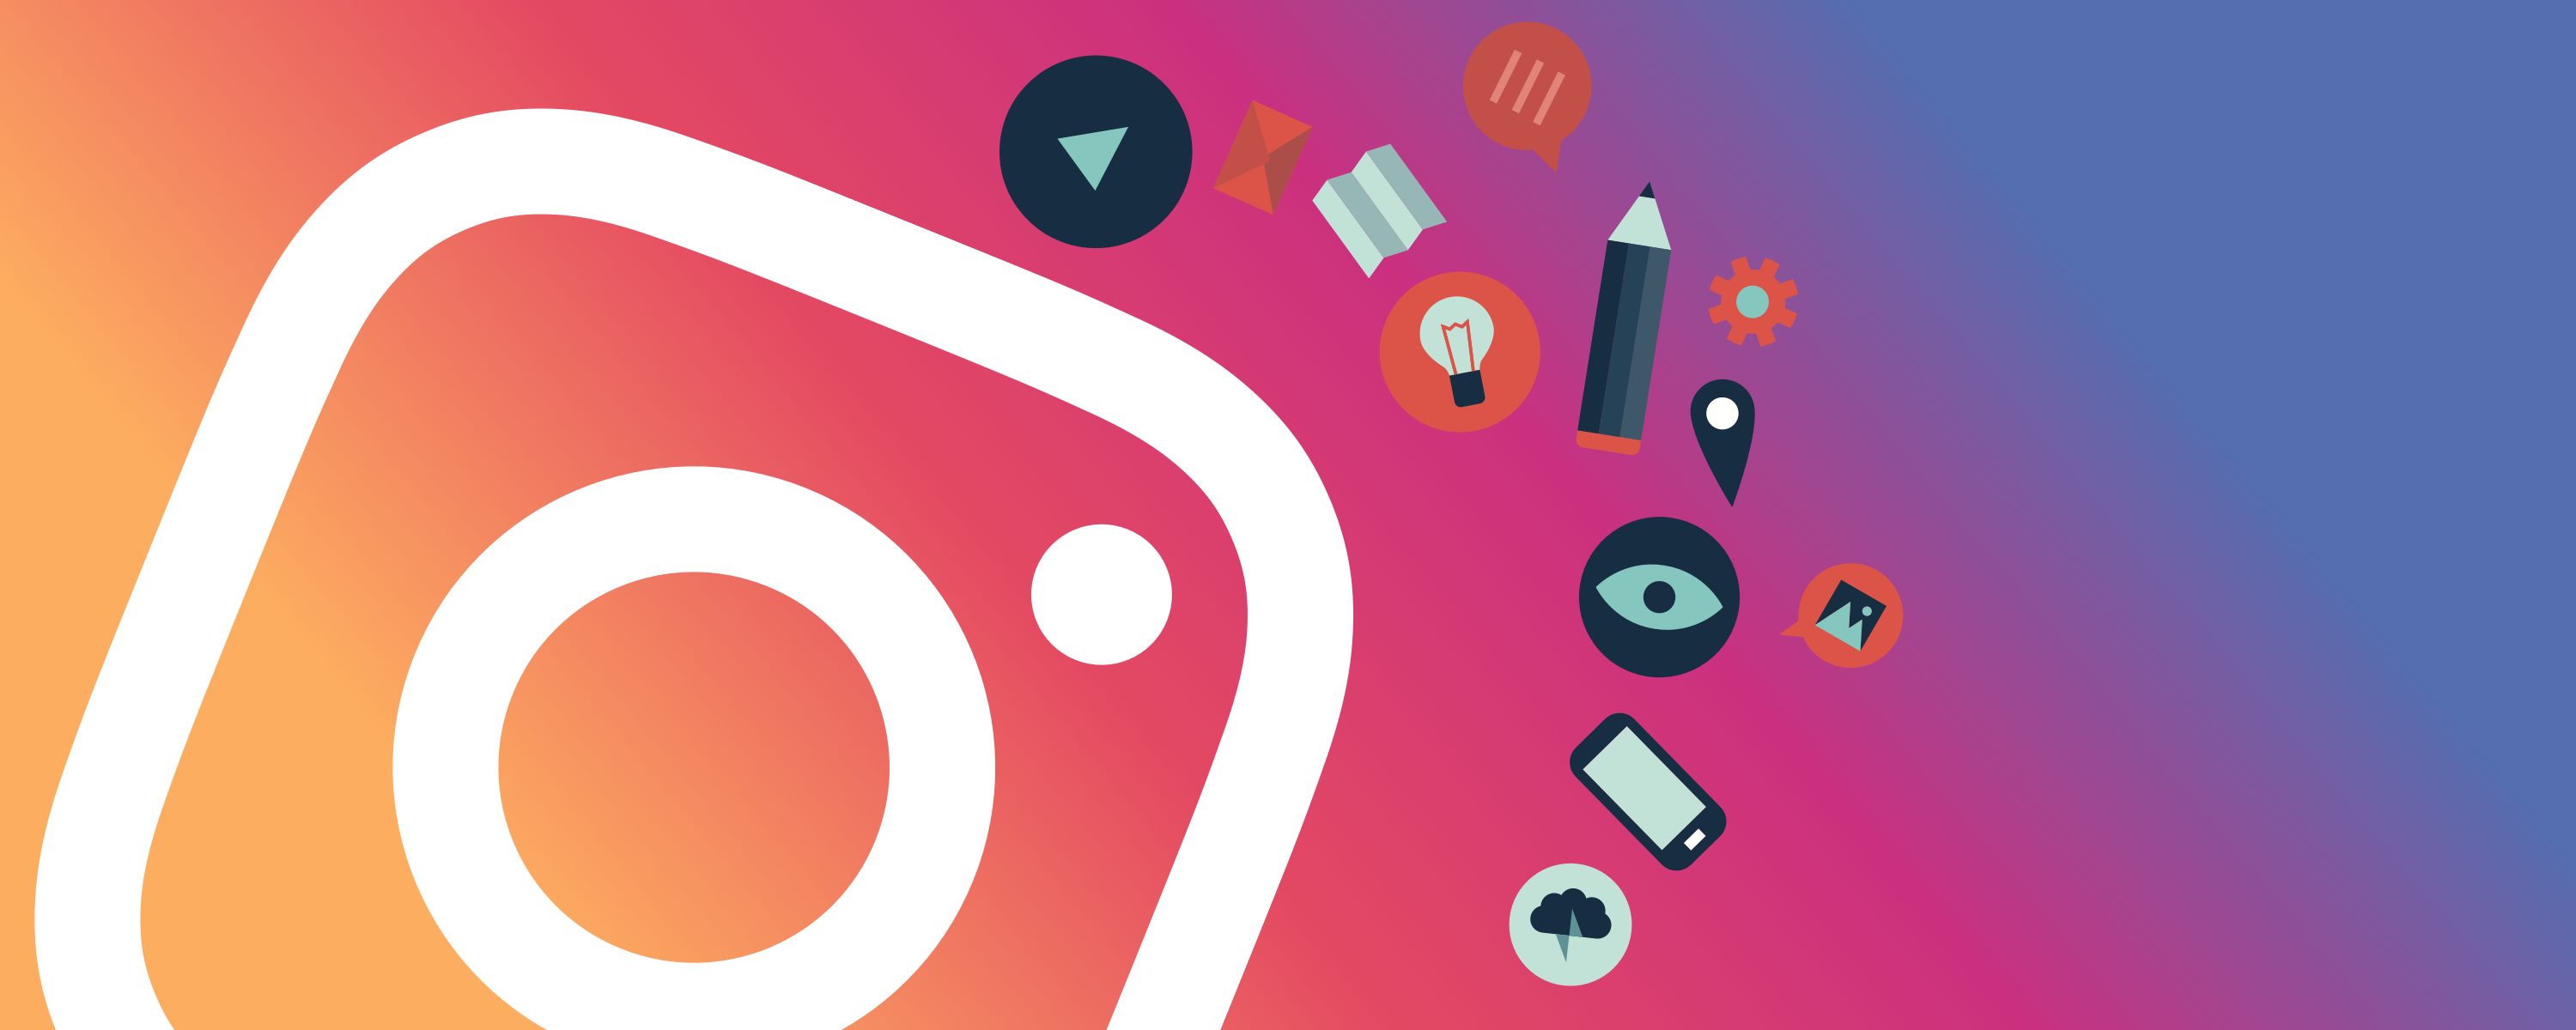 Instagram sẽ thêm chức năng hiển thị thời gian sử dụng của người dùng